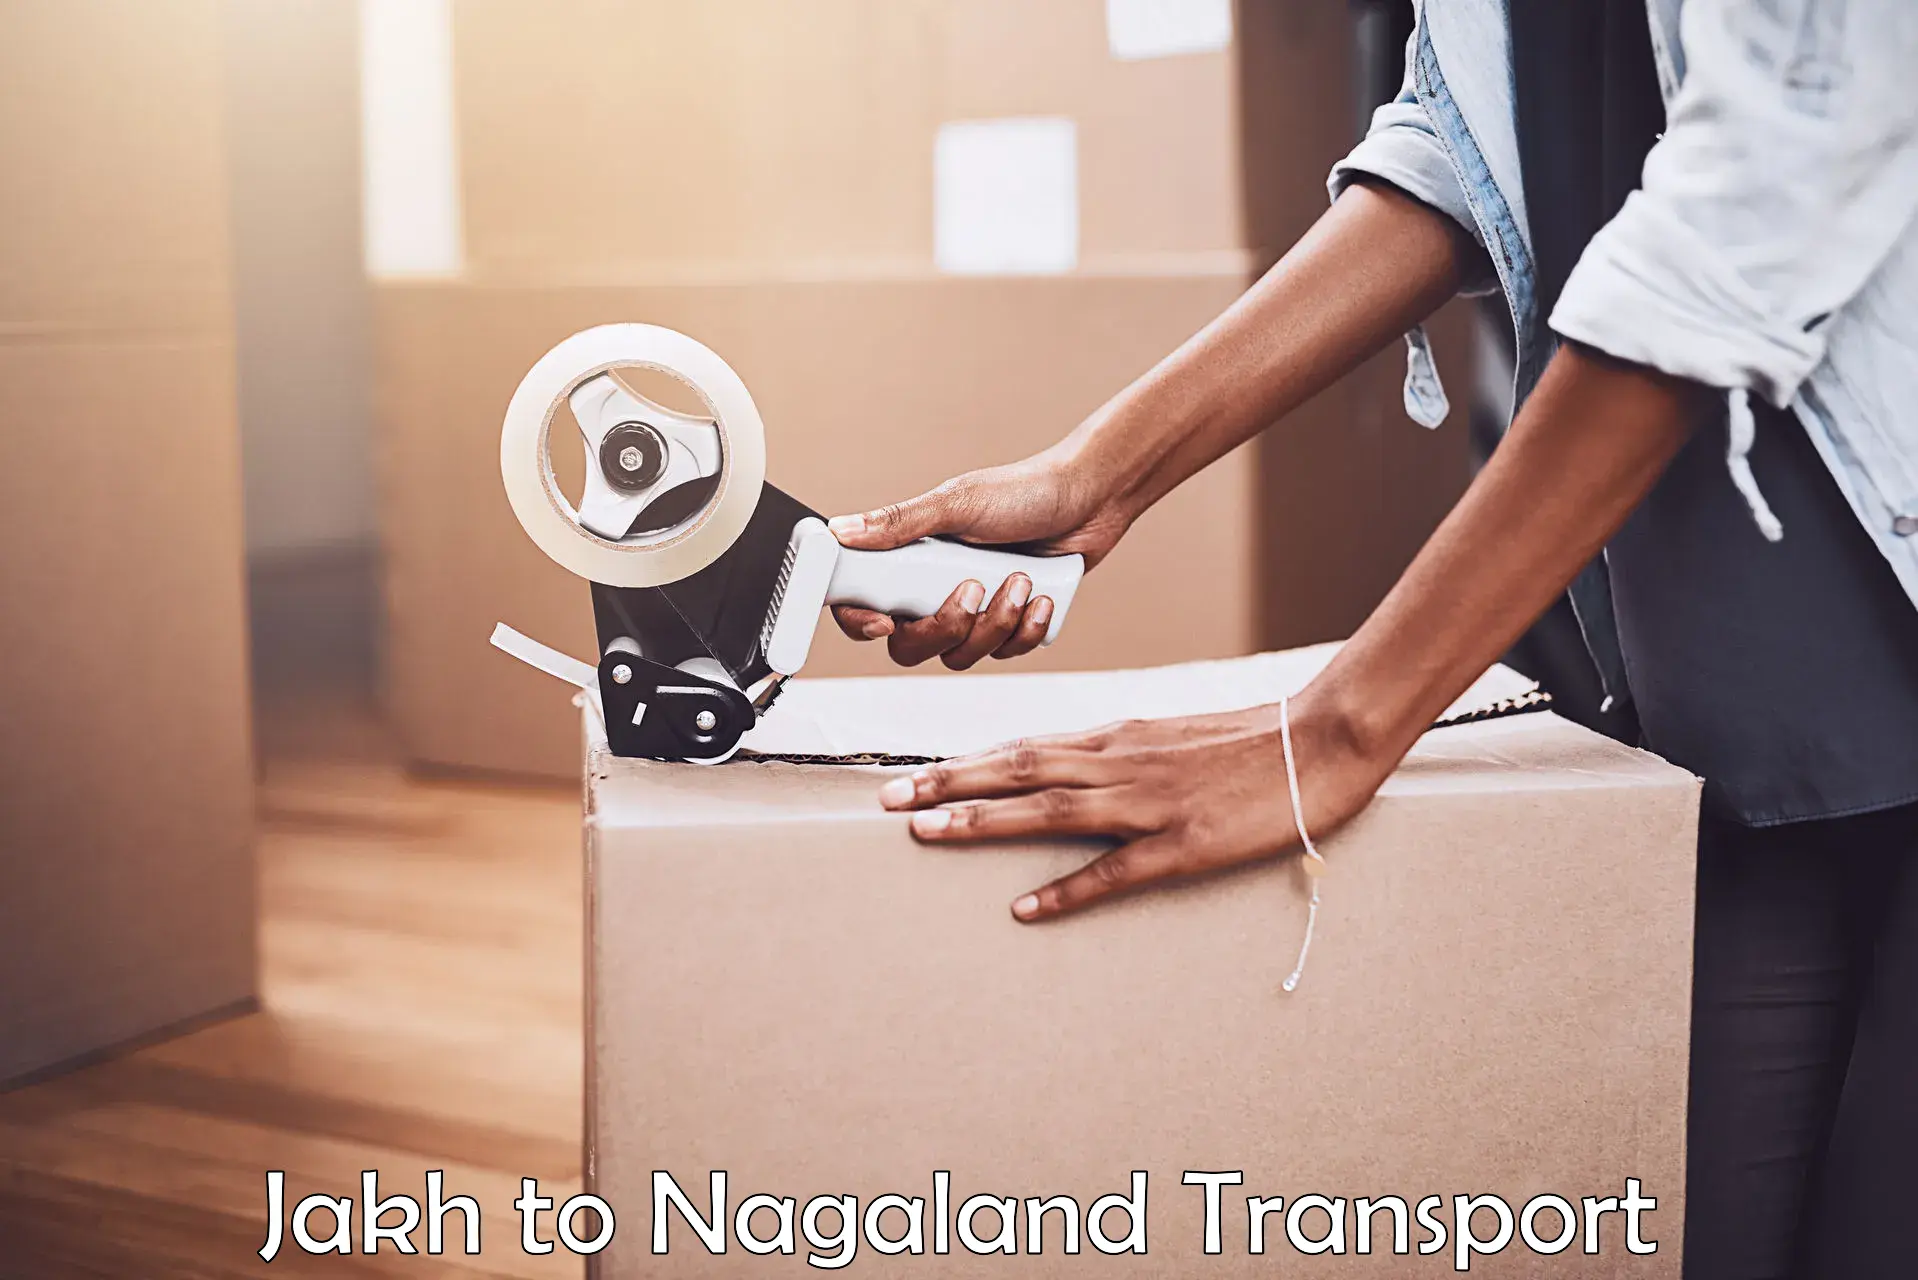 Online transport Jakh to Nagaland